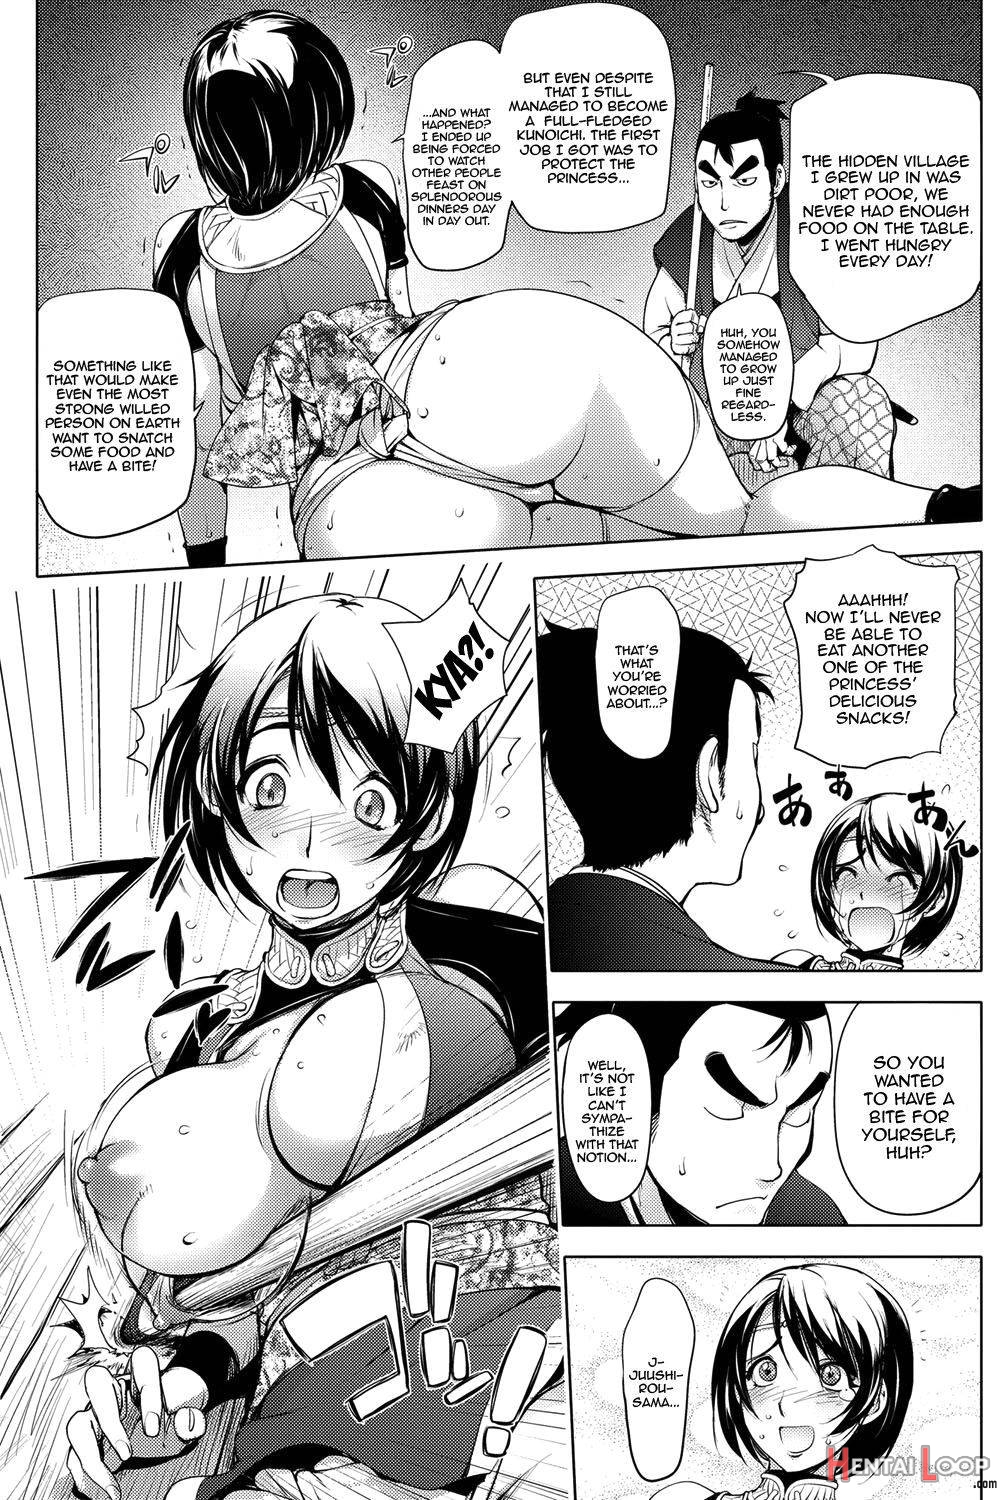 Torokeru Kunoichi Ntr Story + Prequel page 3